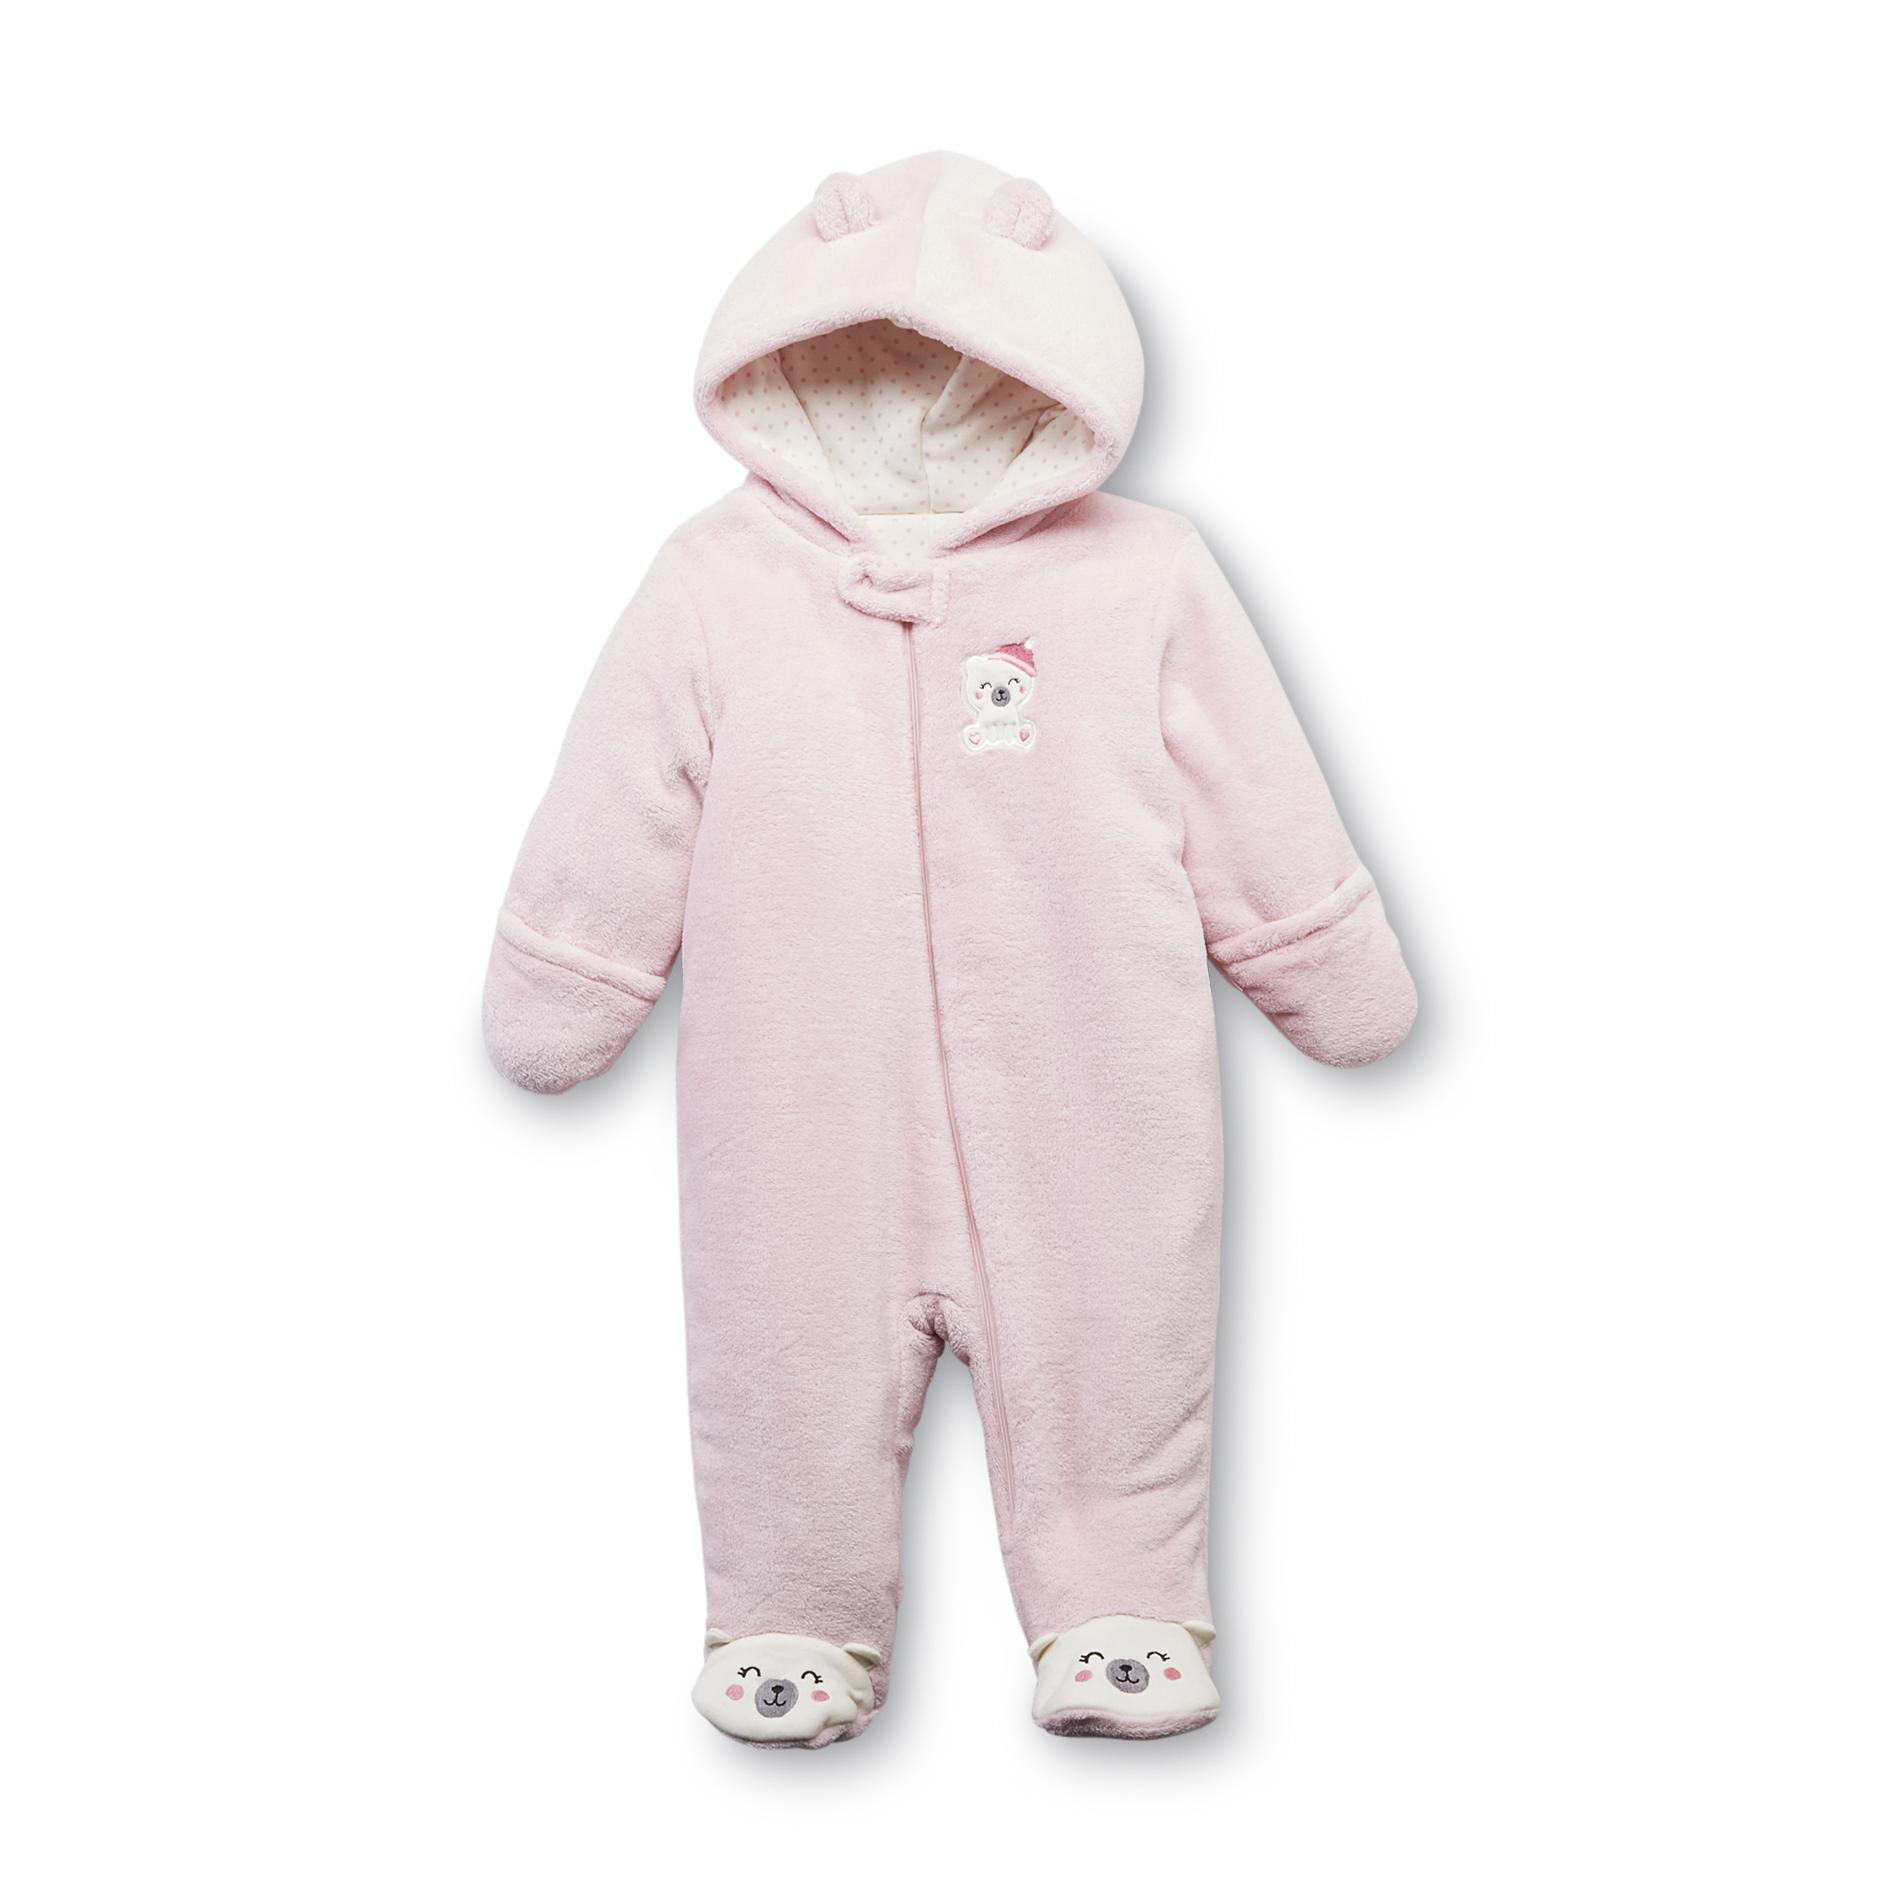 Little Wonders Newborn Girl's Hooded Pram Suit - Bear